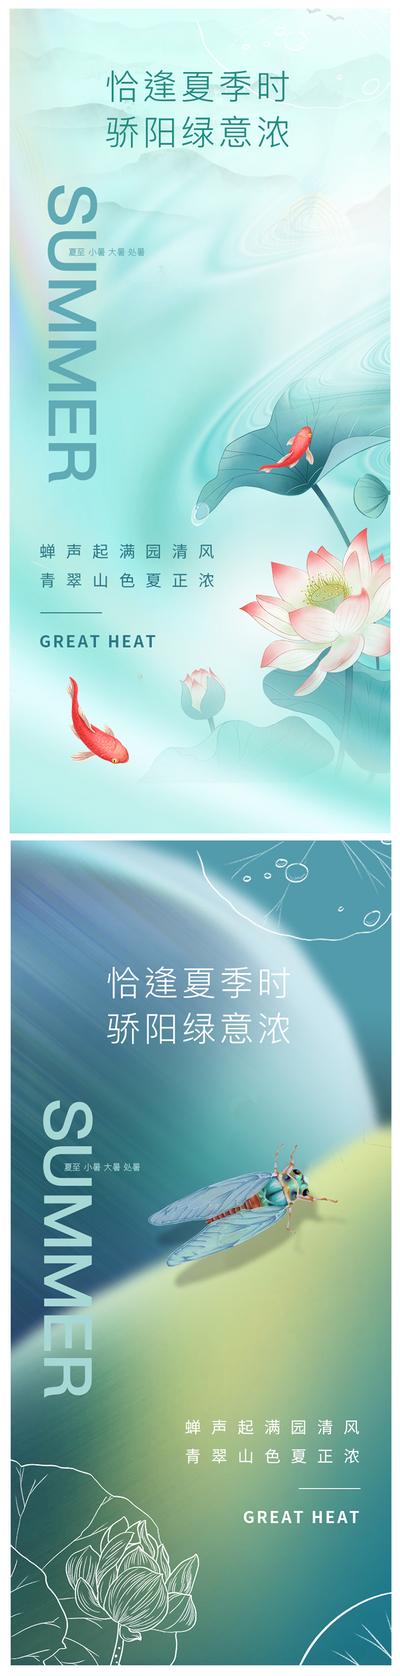 【南门网】海报  二十四节气 夏至 小暑 大暑 处暑 荷花 鲤鱼 蝉